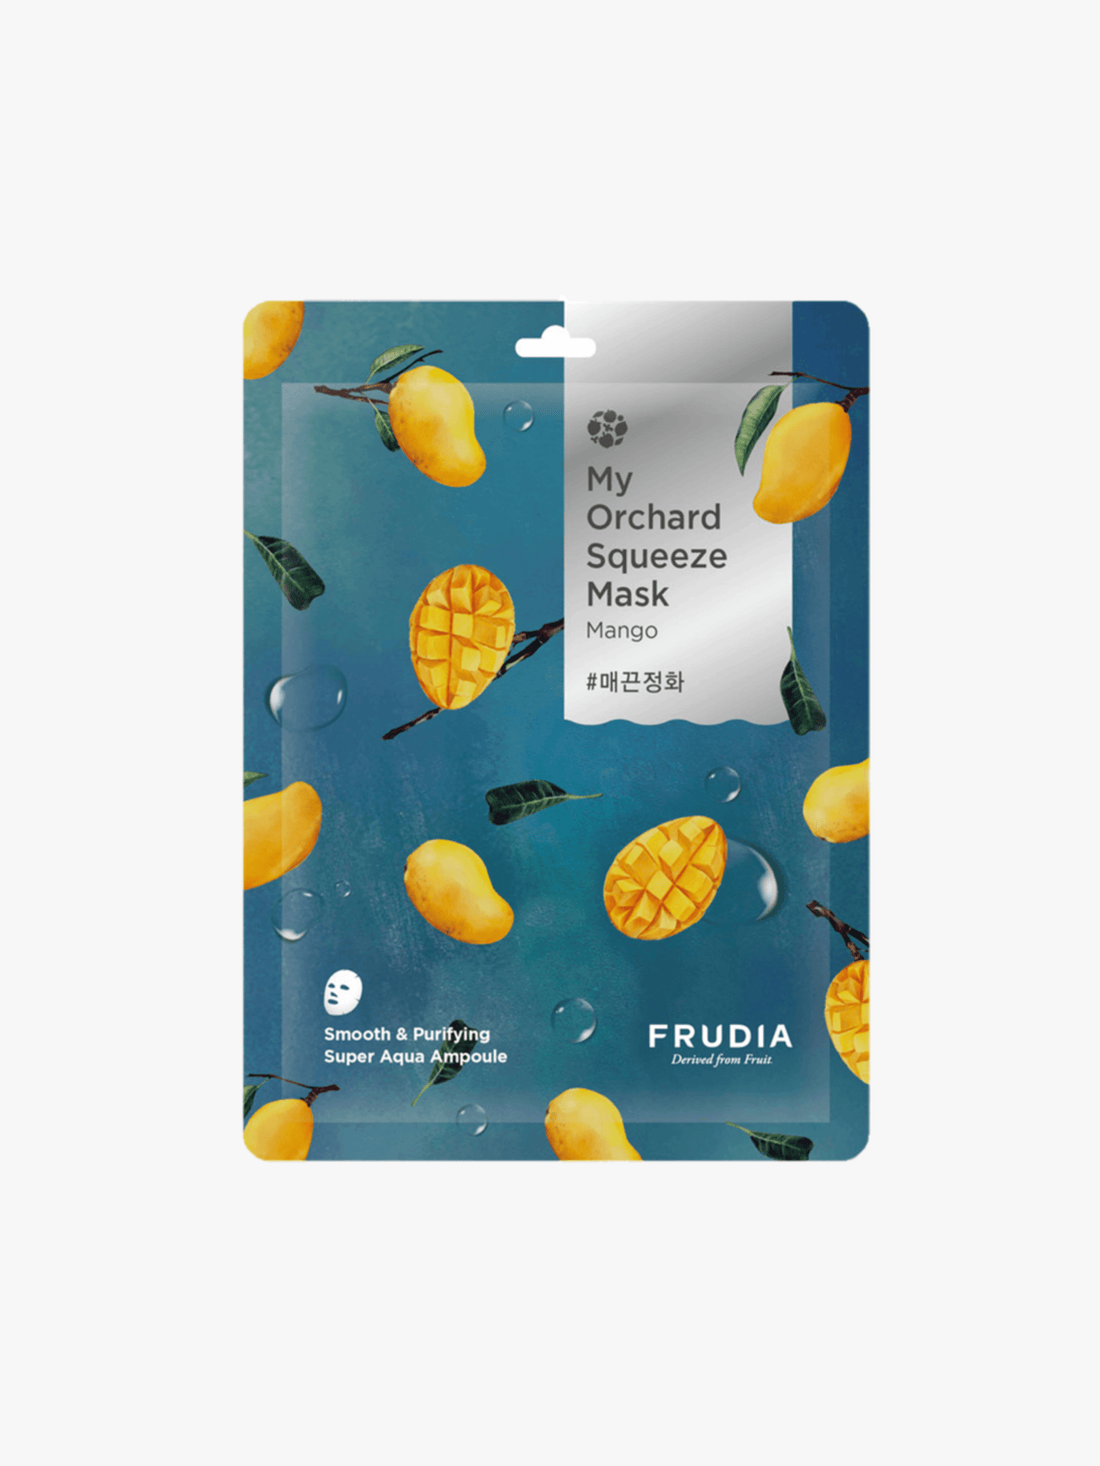 FRUDIA - Mask - My Orchard Squeeze Mask Mango